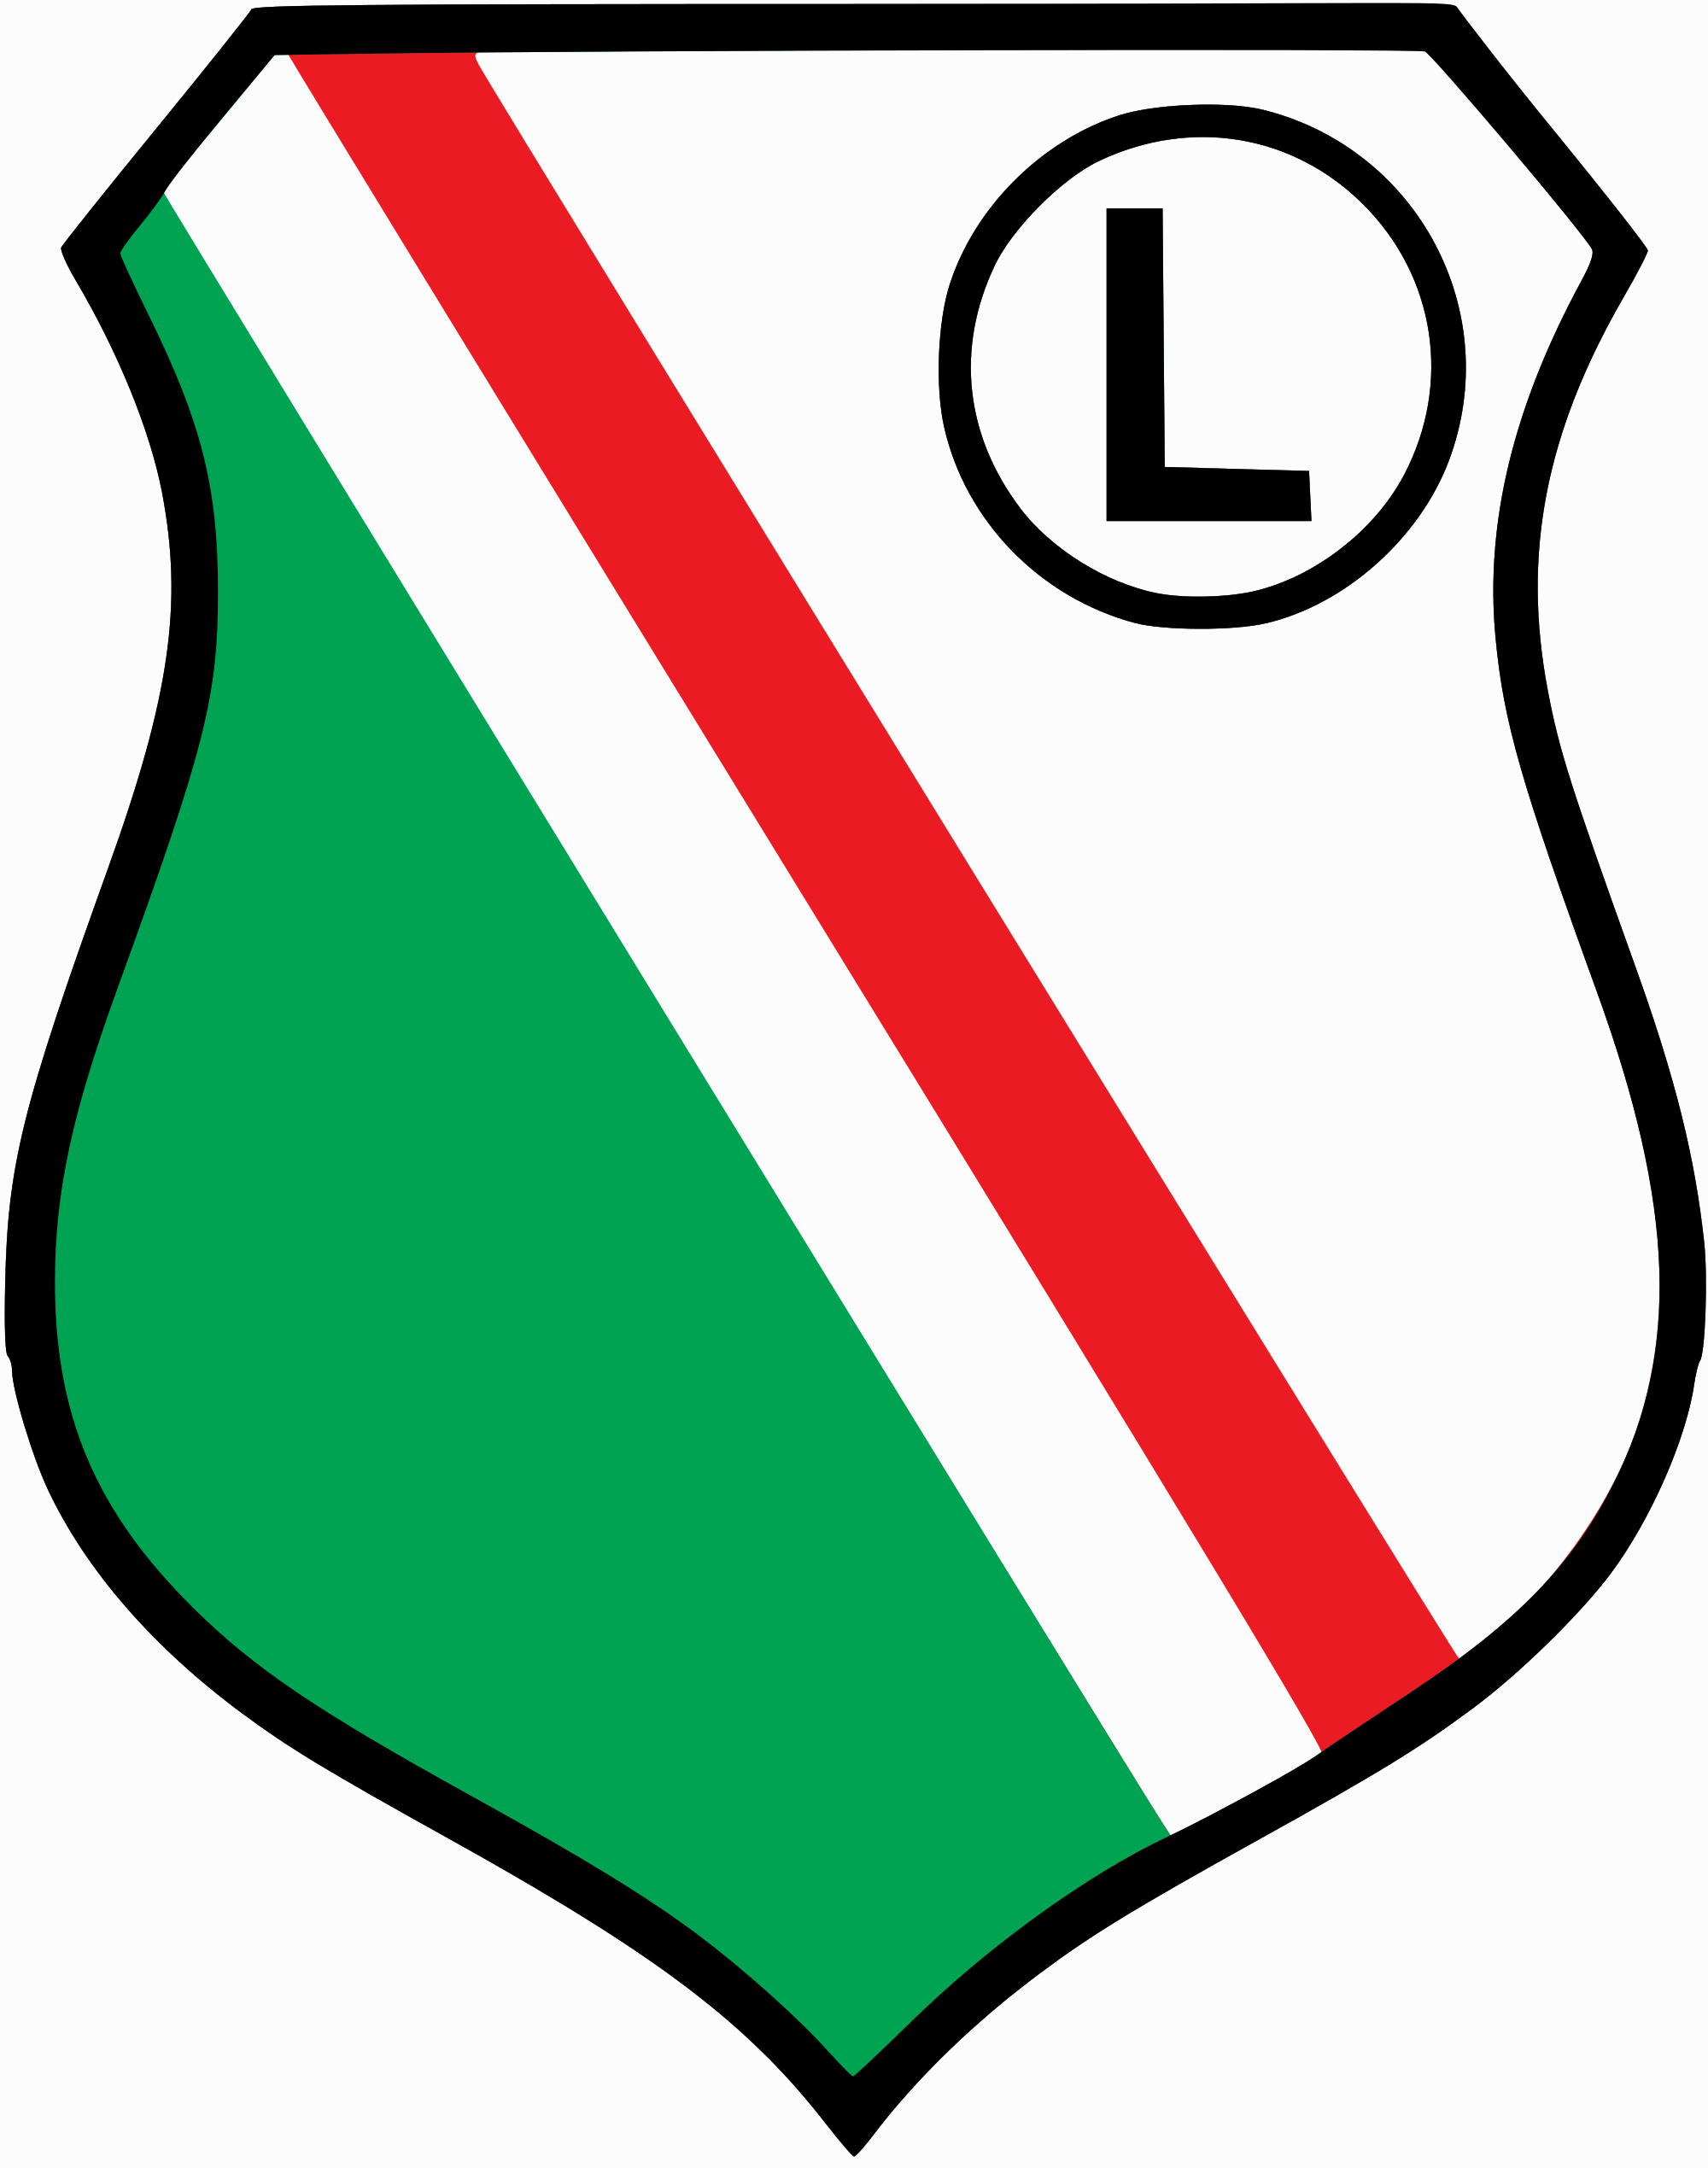 Legia Warsaw logo